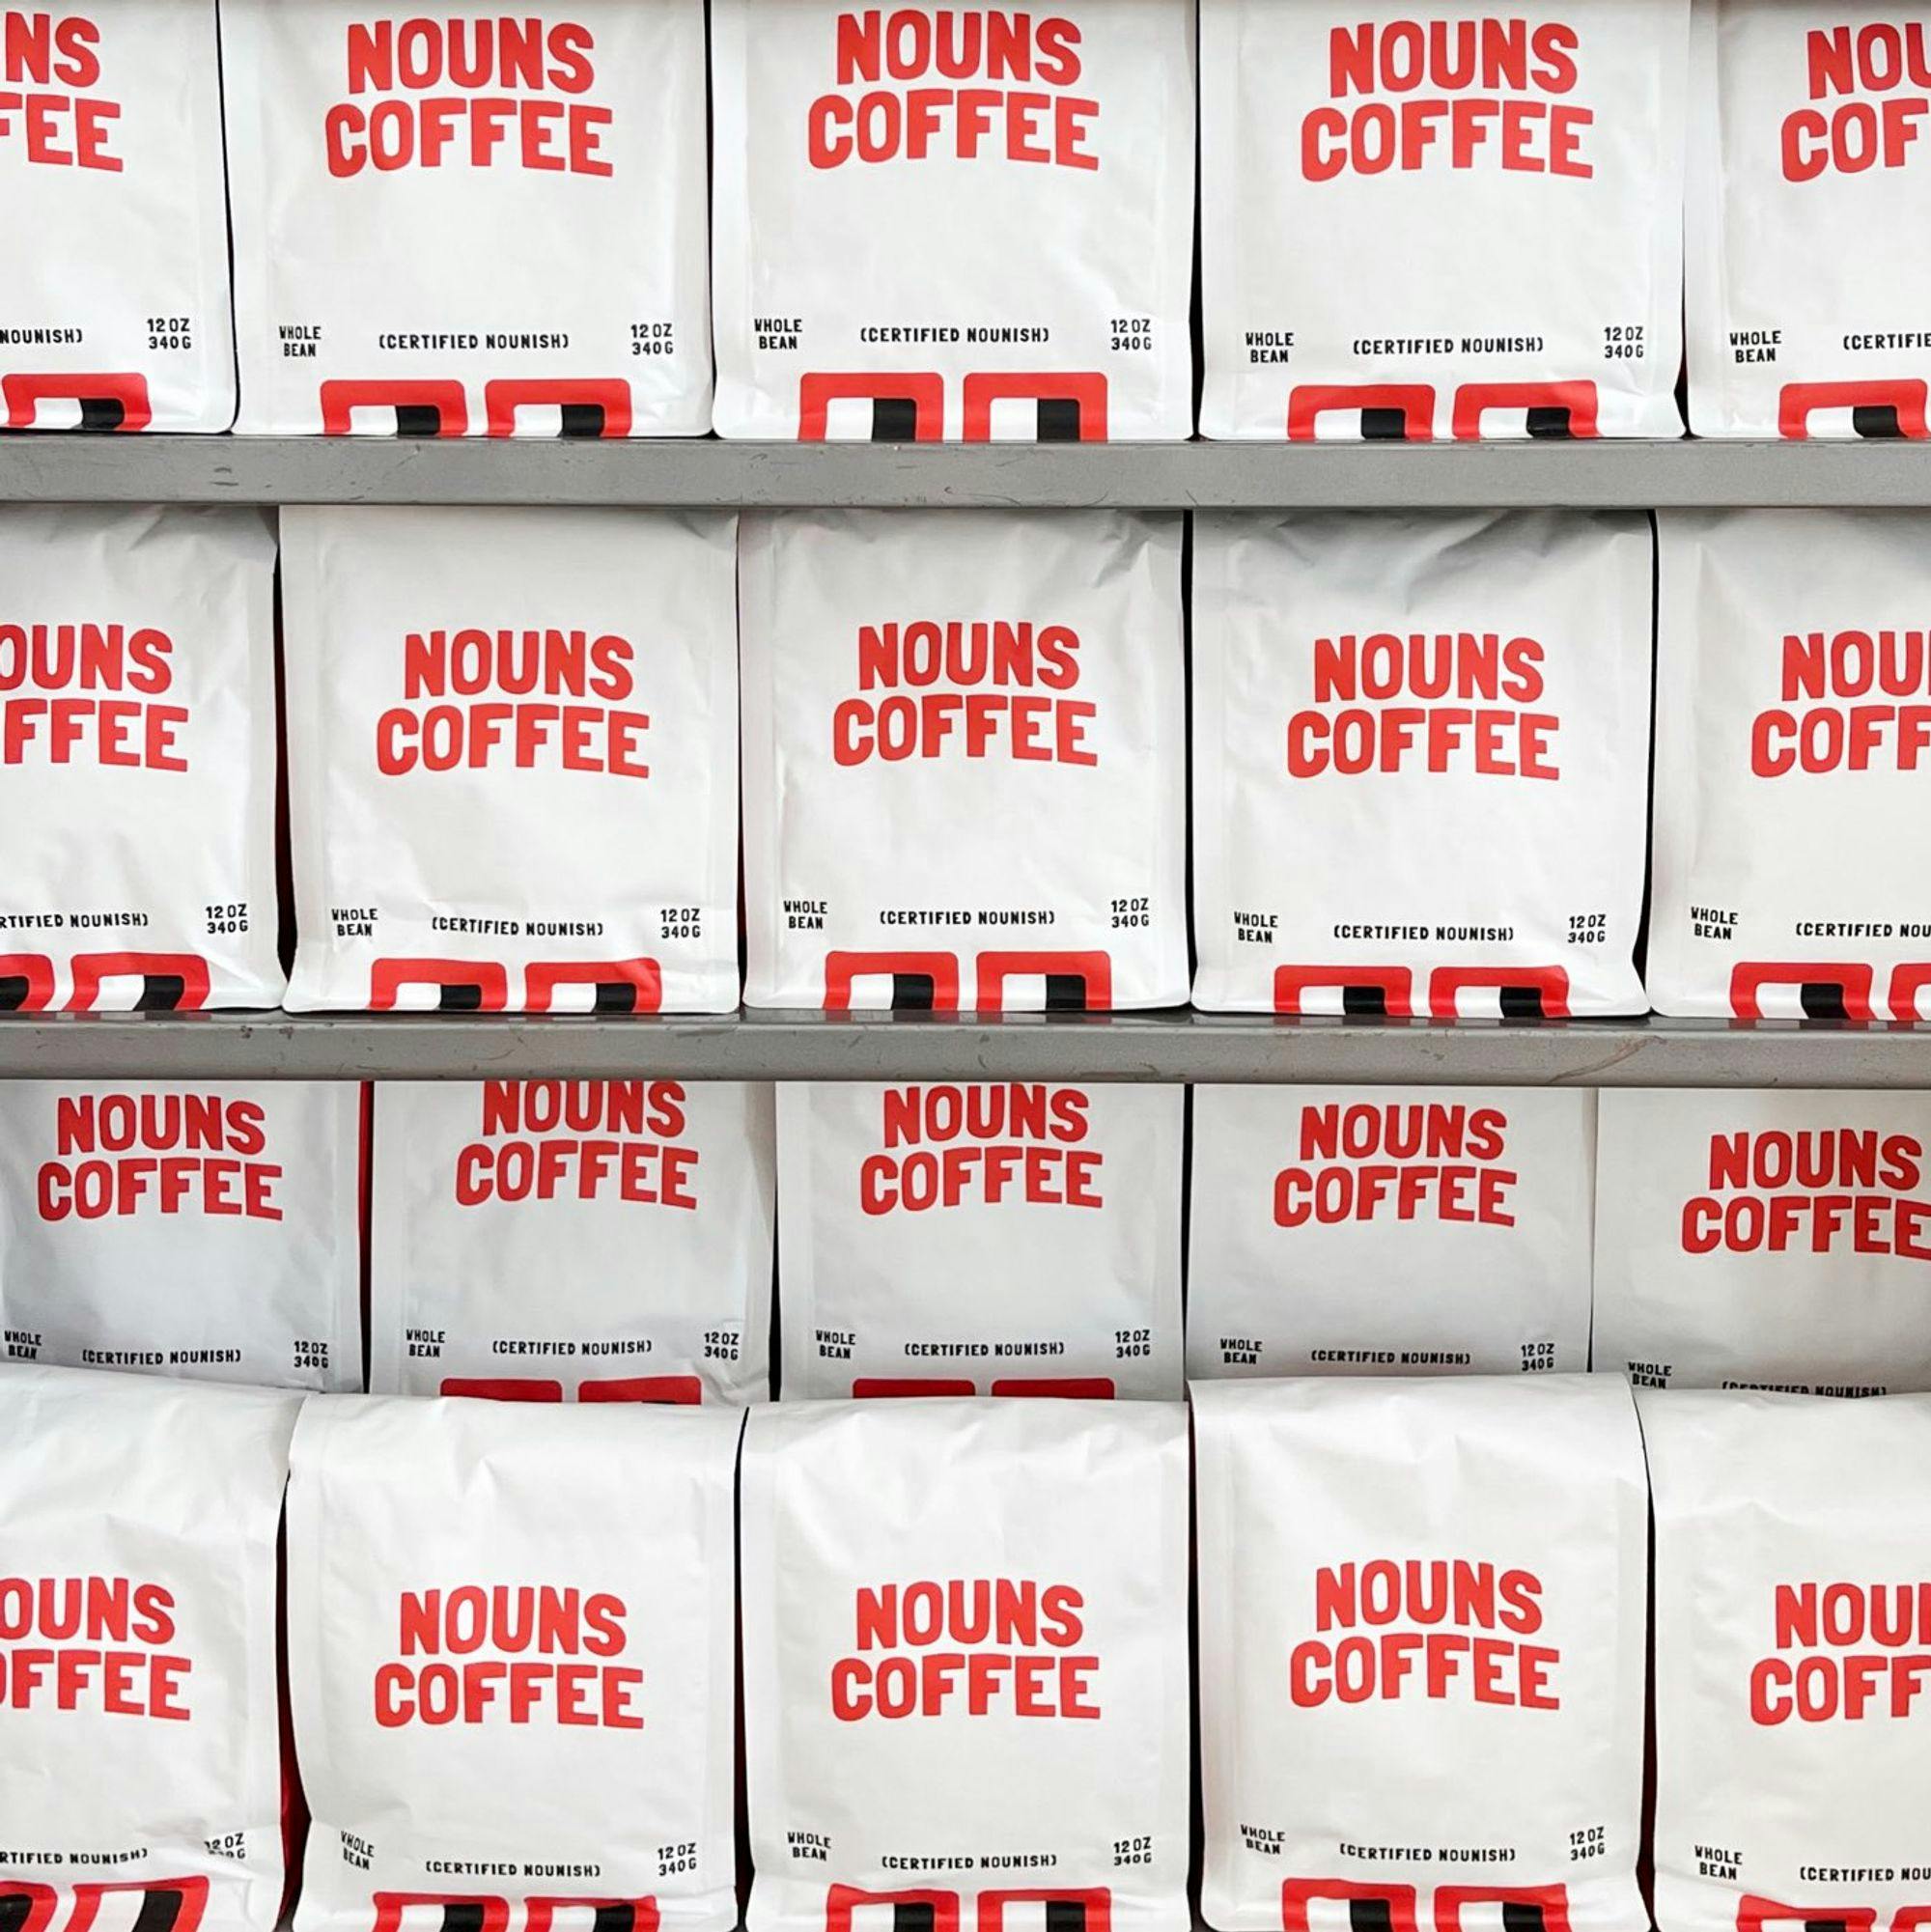 Nouns Coffee Racks.jpg